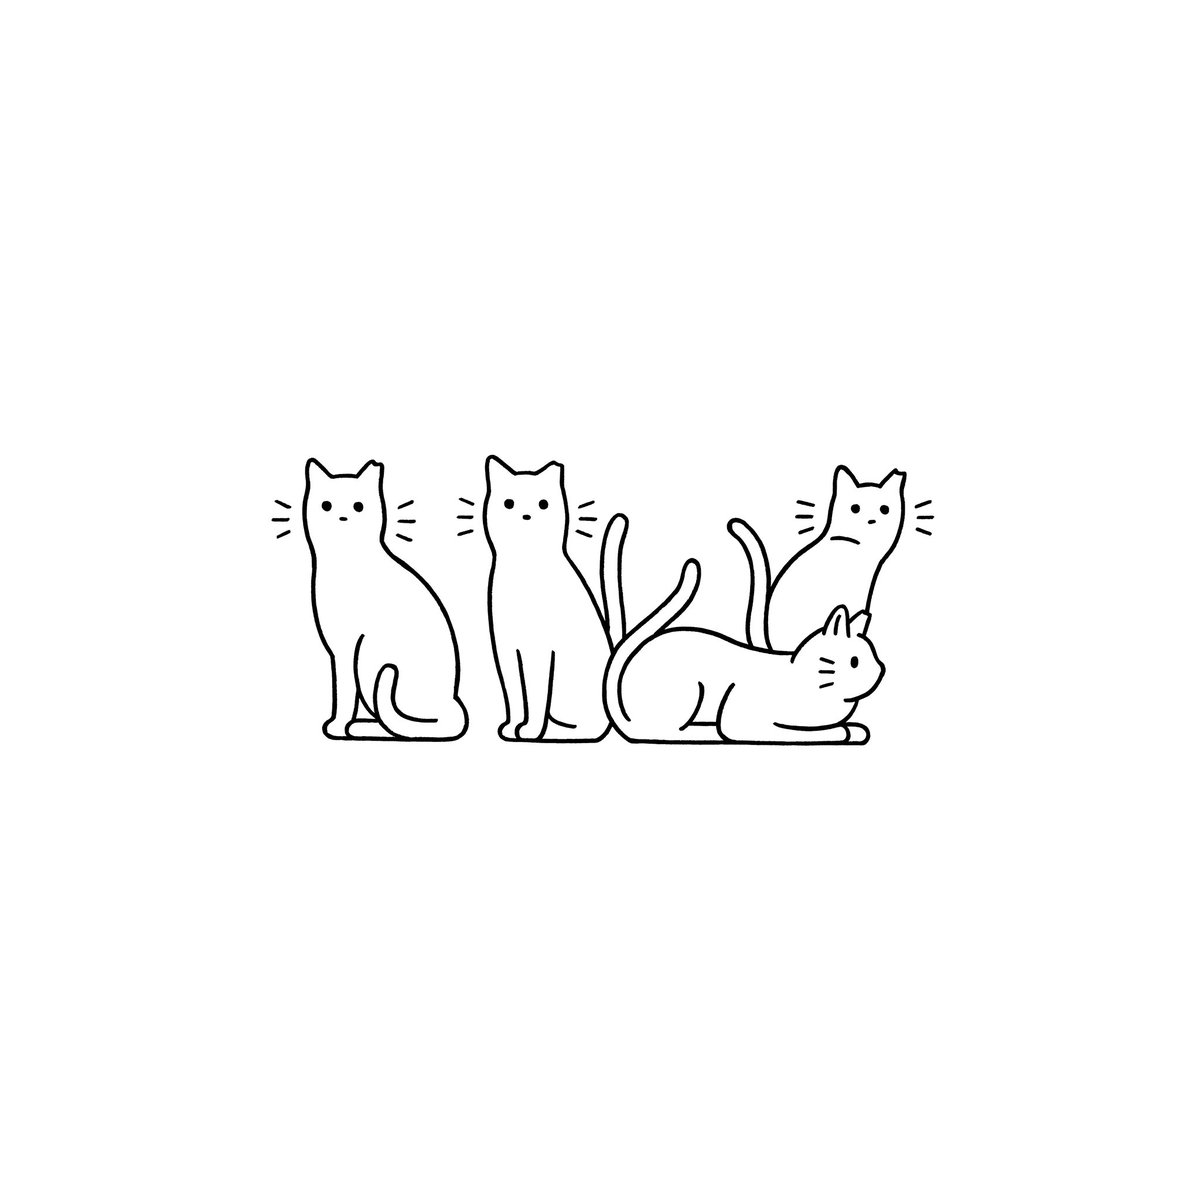 神戸市の動物愛護支援事業でふるさと納税がどの様な取り組みに使われているかを紹介する冊子「ひとと猫が共生する街、神戸」のスタートアップのディレクションとイラストを担当しました。
https://t.co/ls2kfic2Tg 